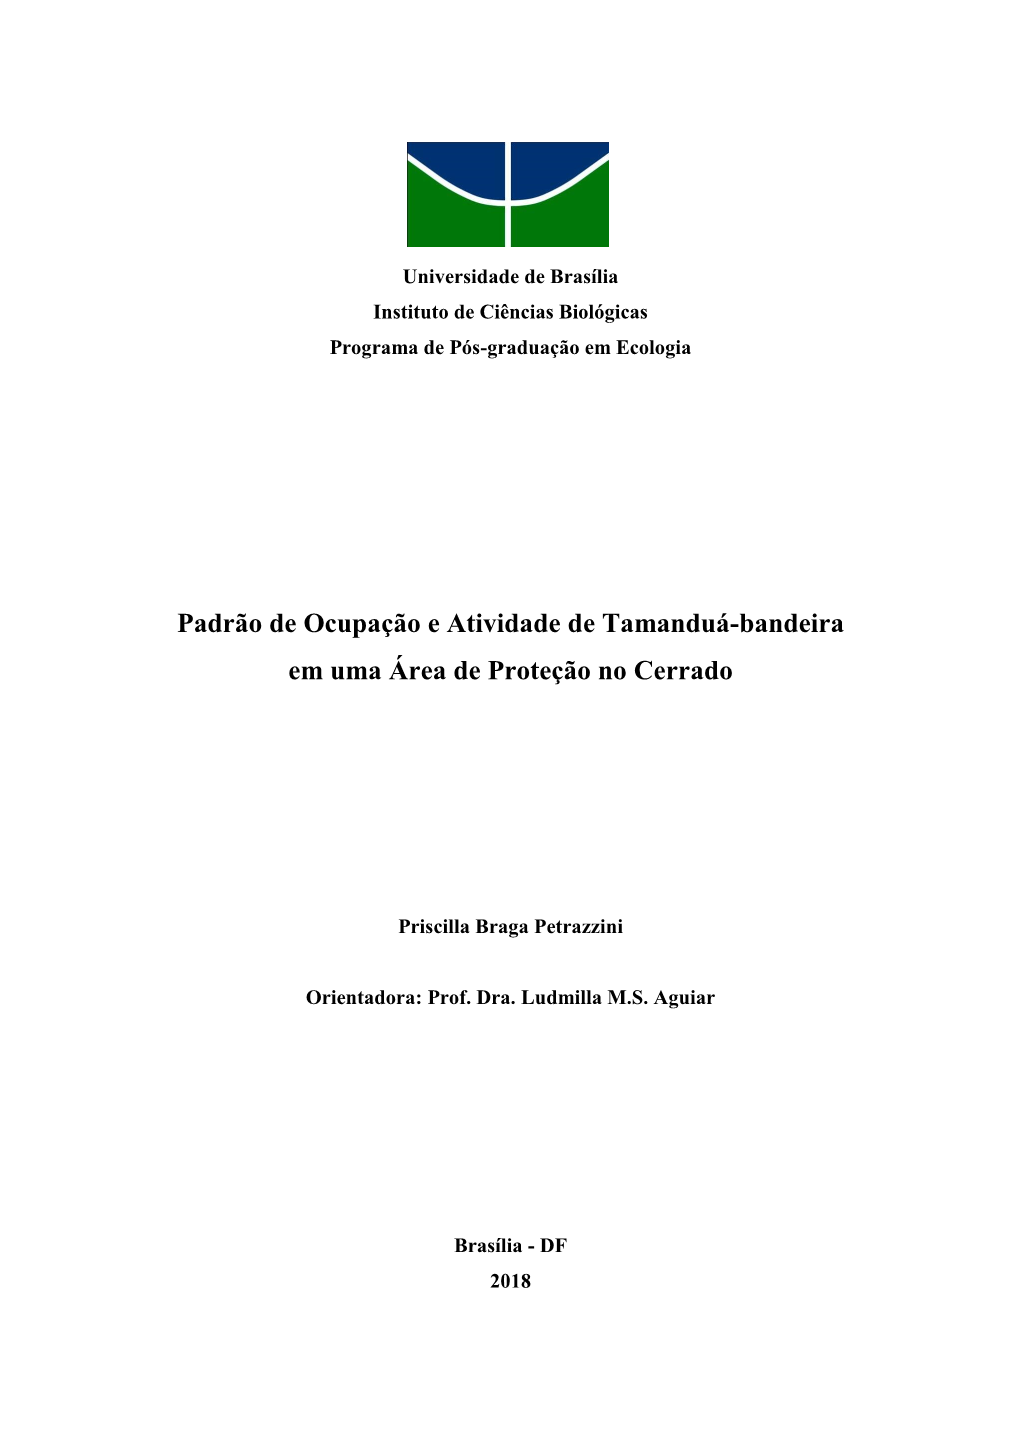 Padrão De Ocupação E Atividade De Tamanduá-Bandeira Em Uma Área De Proteção No Cerrado